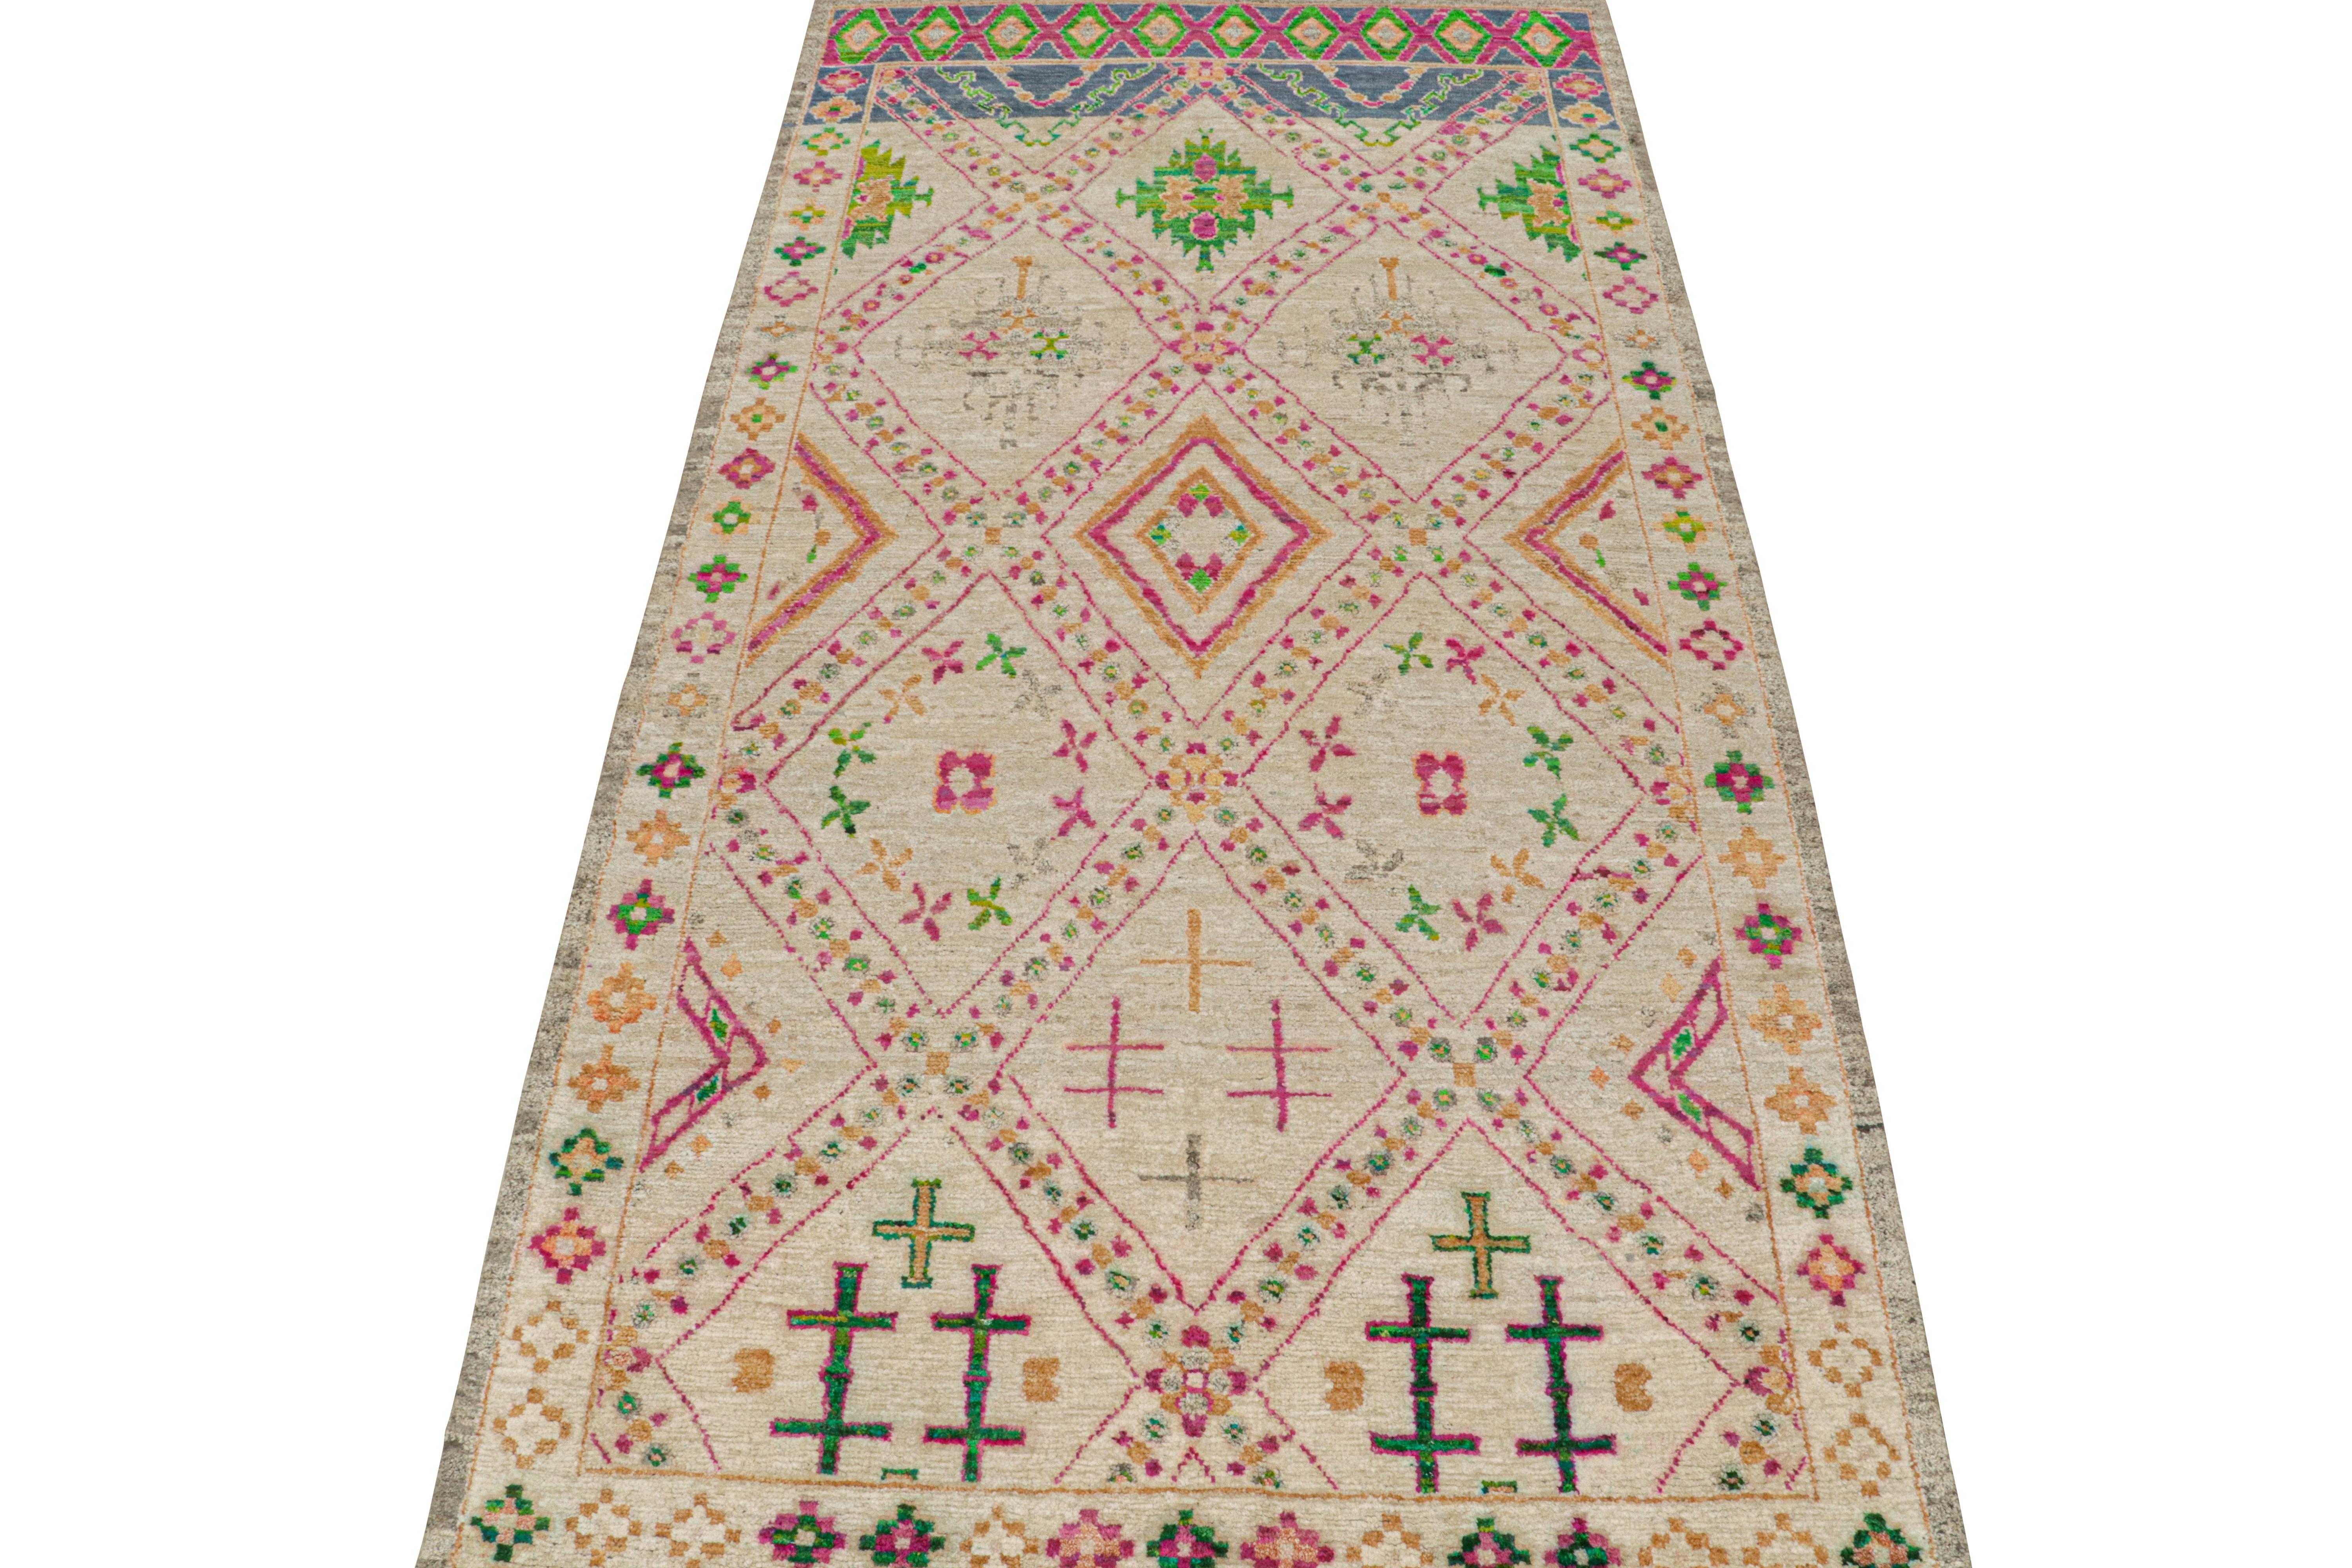 Ce chemin de table 7x15 est un nouvel ajout à la collection de tapis marocains de Rug & Kilim. Noué à la main en laine et en soie, son design reprend la sensibilité tribale classique dans une nouvelle qualité moderne.

Ce design fantaisiste présente